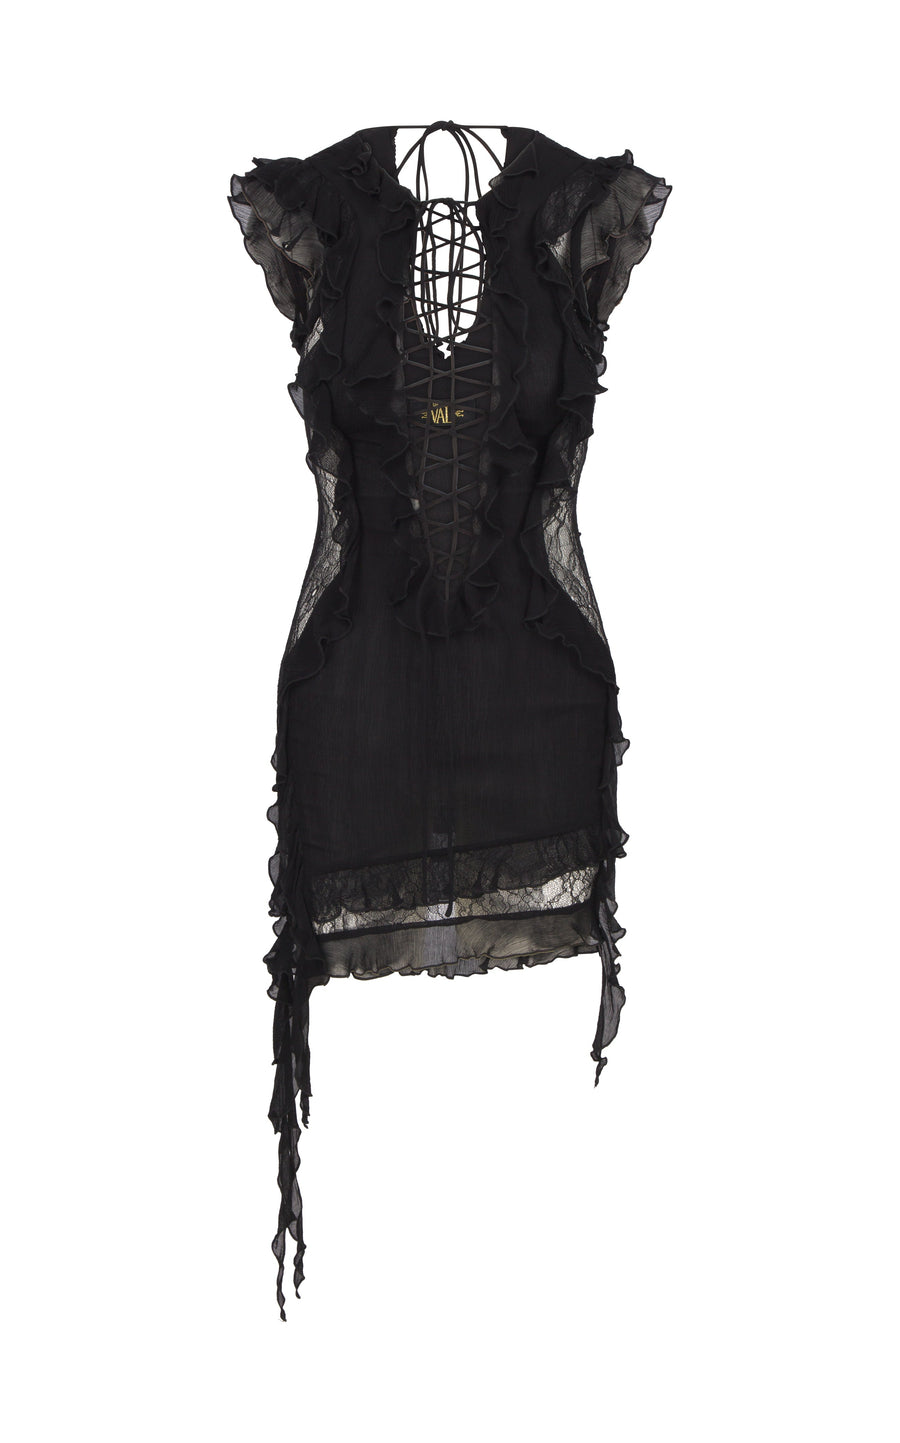 Goliath Lace Insert Mini Dress in Black Chiffon